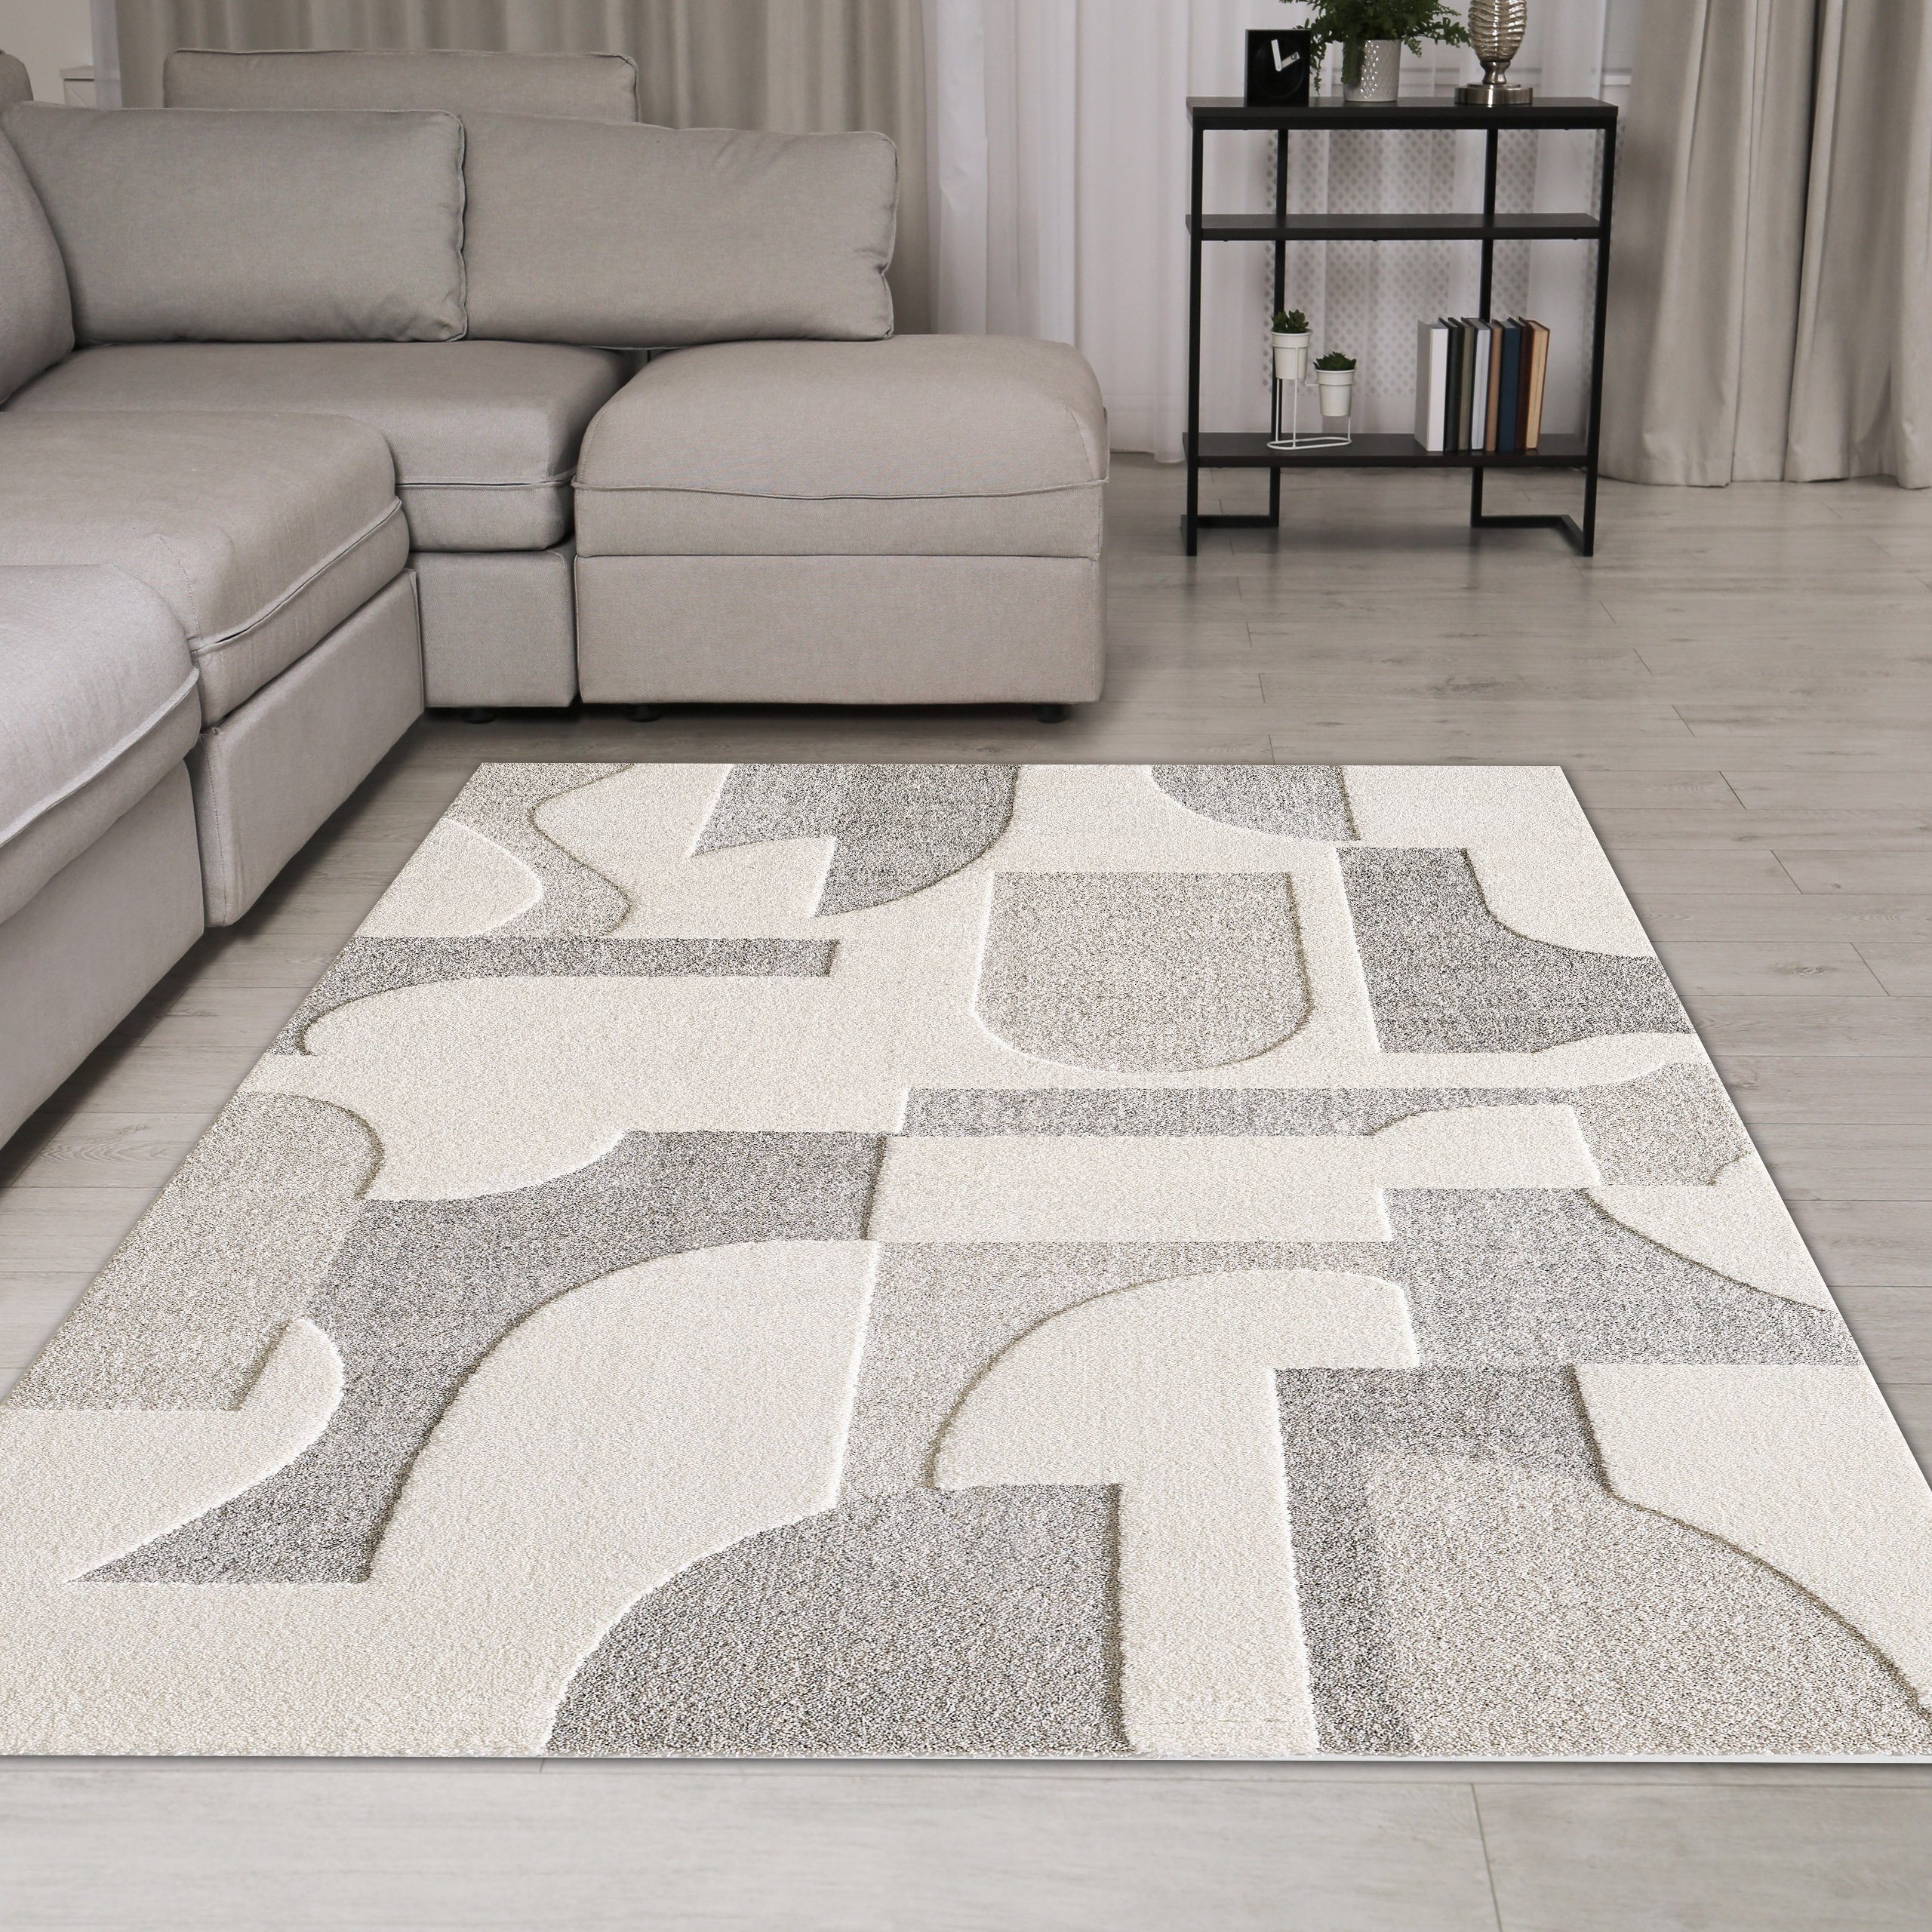 Teppich Designer Teppich in Creme mit geometrischen Mustern, TeppichHome24, rechteckig